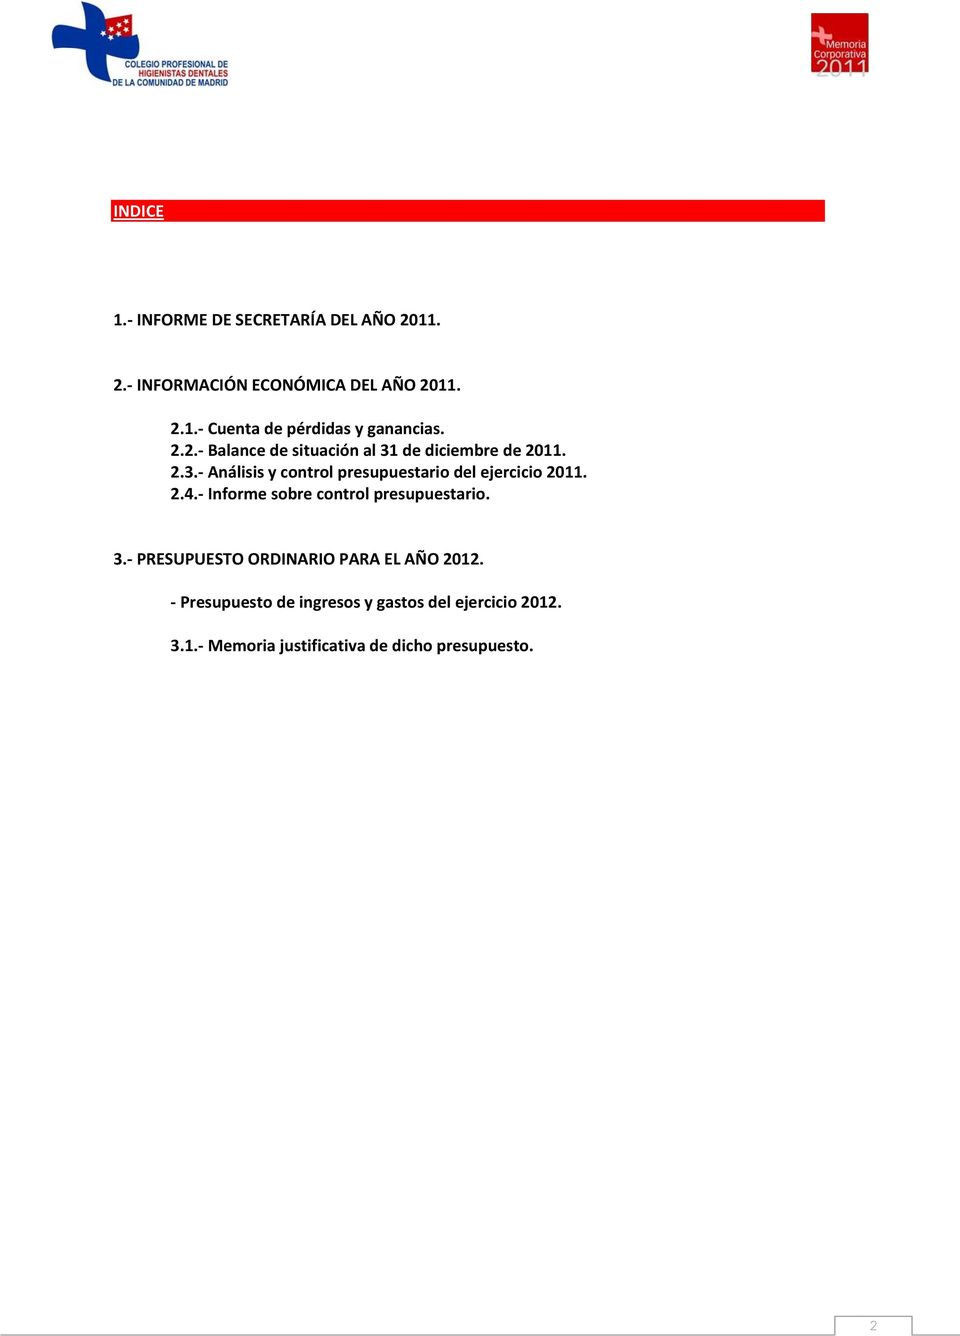 2.4. Informe sobre control presupuestario. 3. PRESUPUESTO ORDINARIO PARA EL AÑO 2012.